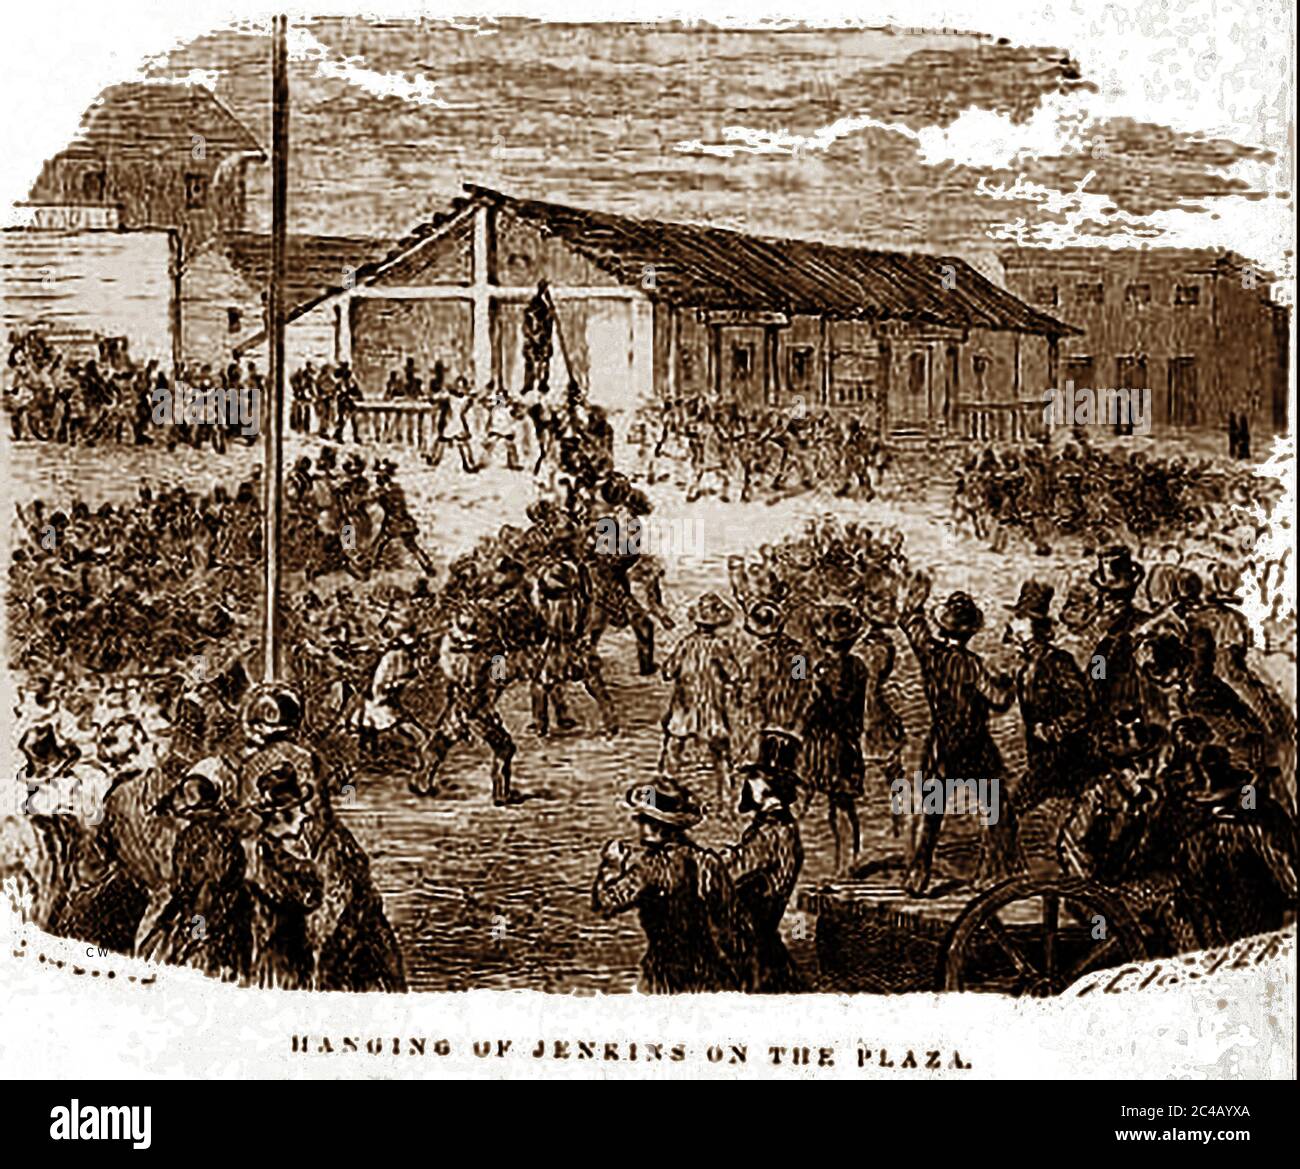 Un lynching pubblico del XIX secolo in California (secondo il Tuskegee Institute, 4,743 persone sono state linciate tra il 1882 e il 1968 negli Stati Uniti, la maggior parte dei quali si è svolta tra il 1890 e gli anni venti, con un anno di punta che è il 1892) Foto Stock